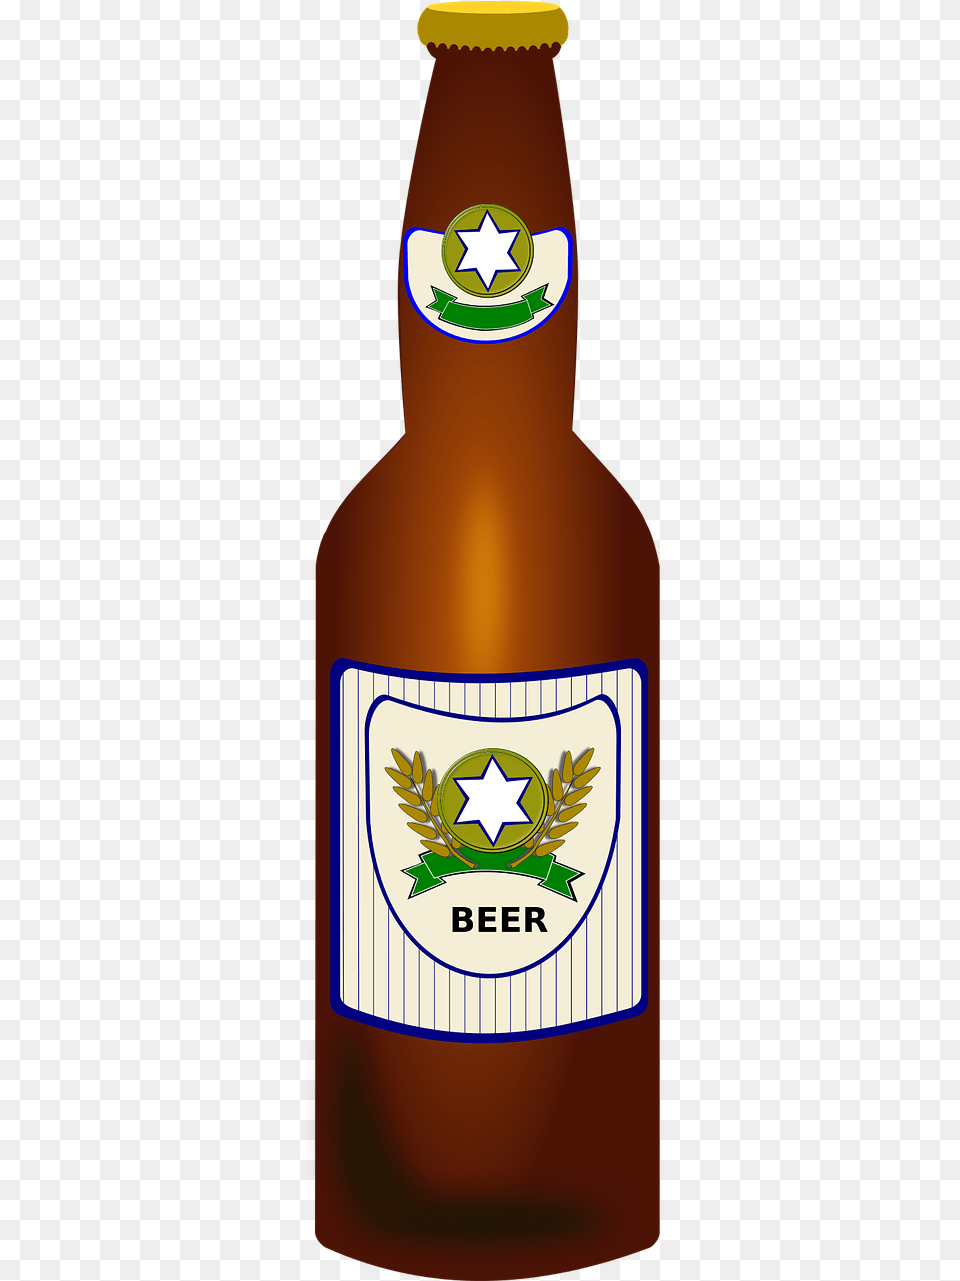 Beer Bottle, Alcohol, Beer Bottle, Beverage, Lager Free Png Download